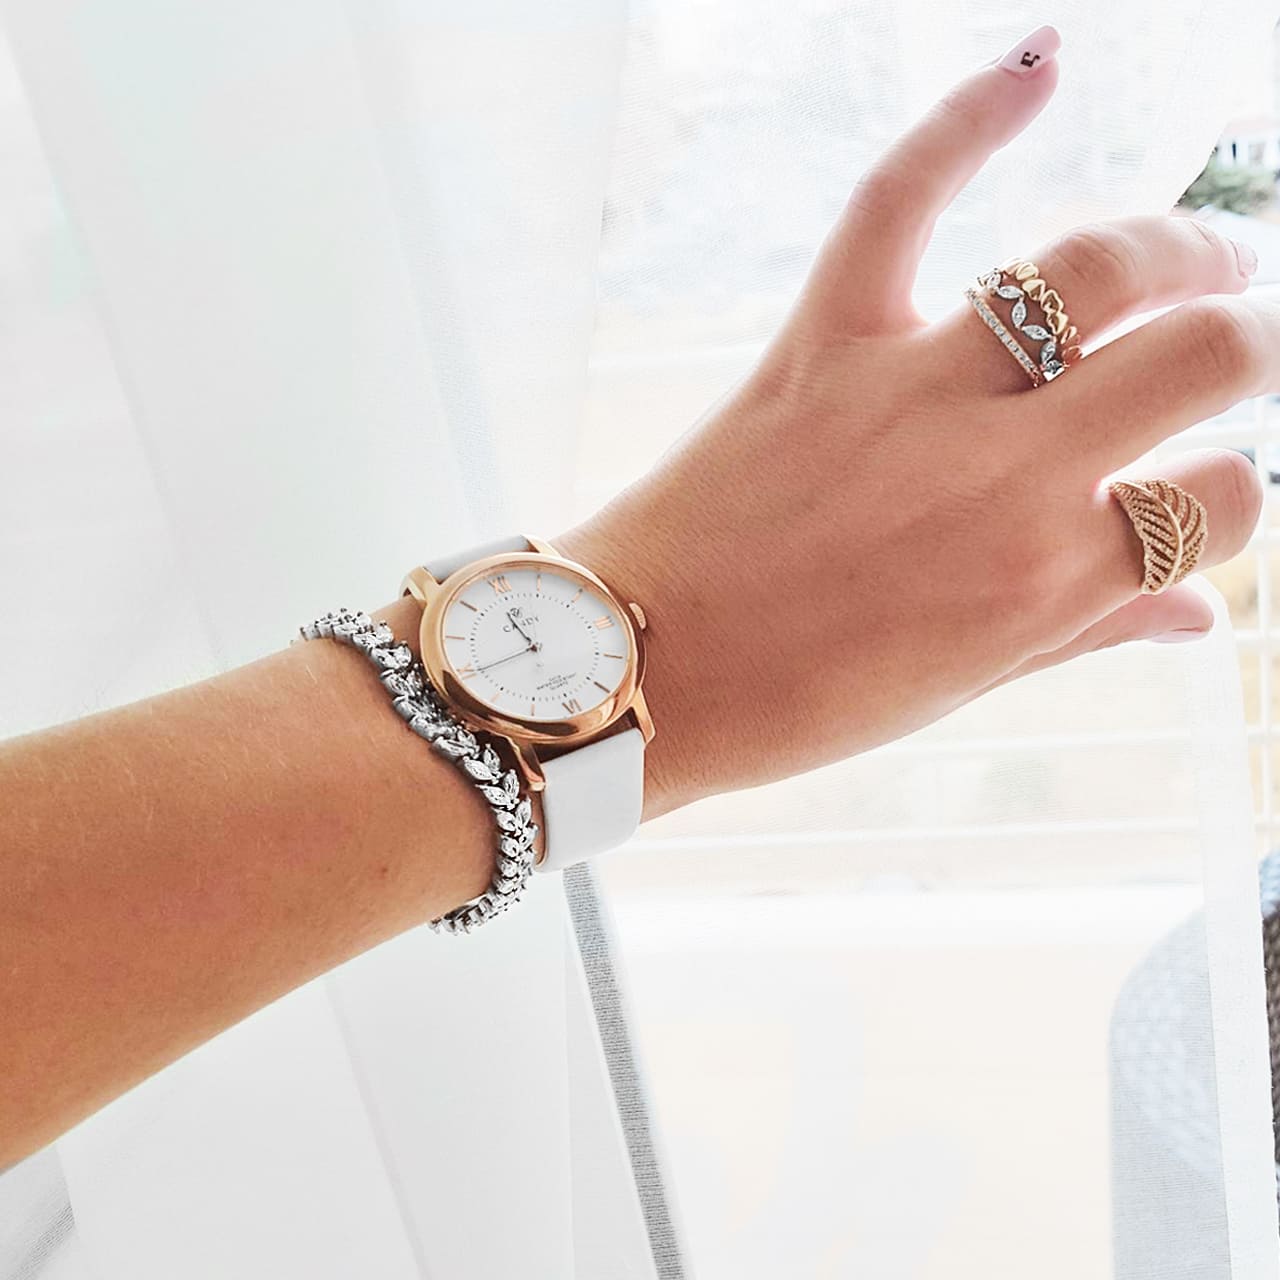 Rosegoldene Uhr mit weissem Lederband perfekt kombiniert zu Armbänder und Ringen aus Sterling Silber in Chur